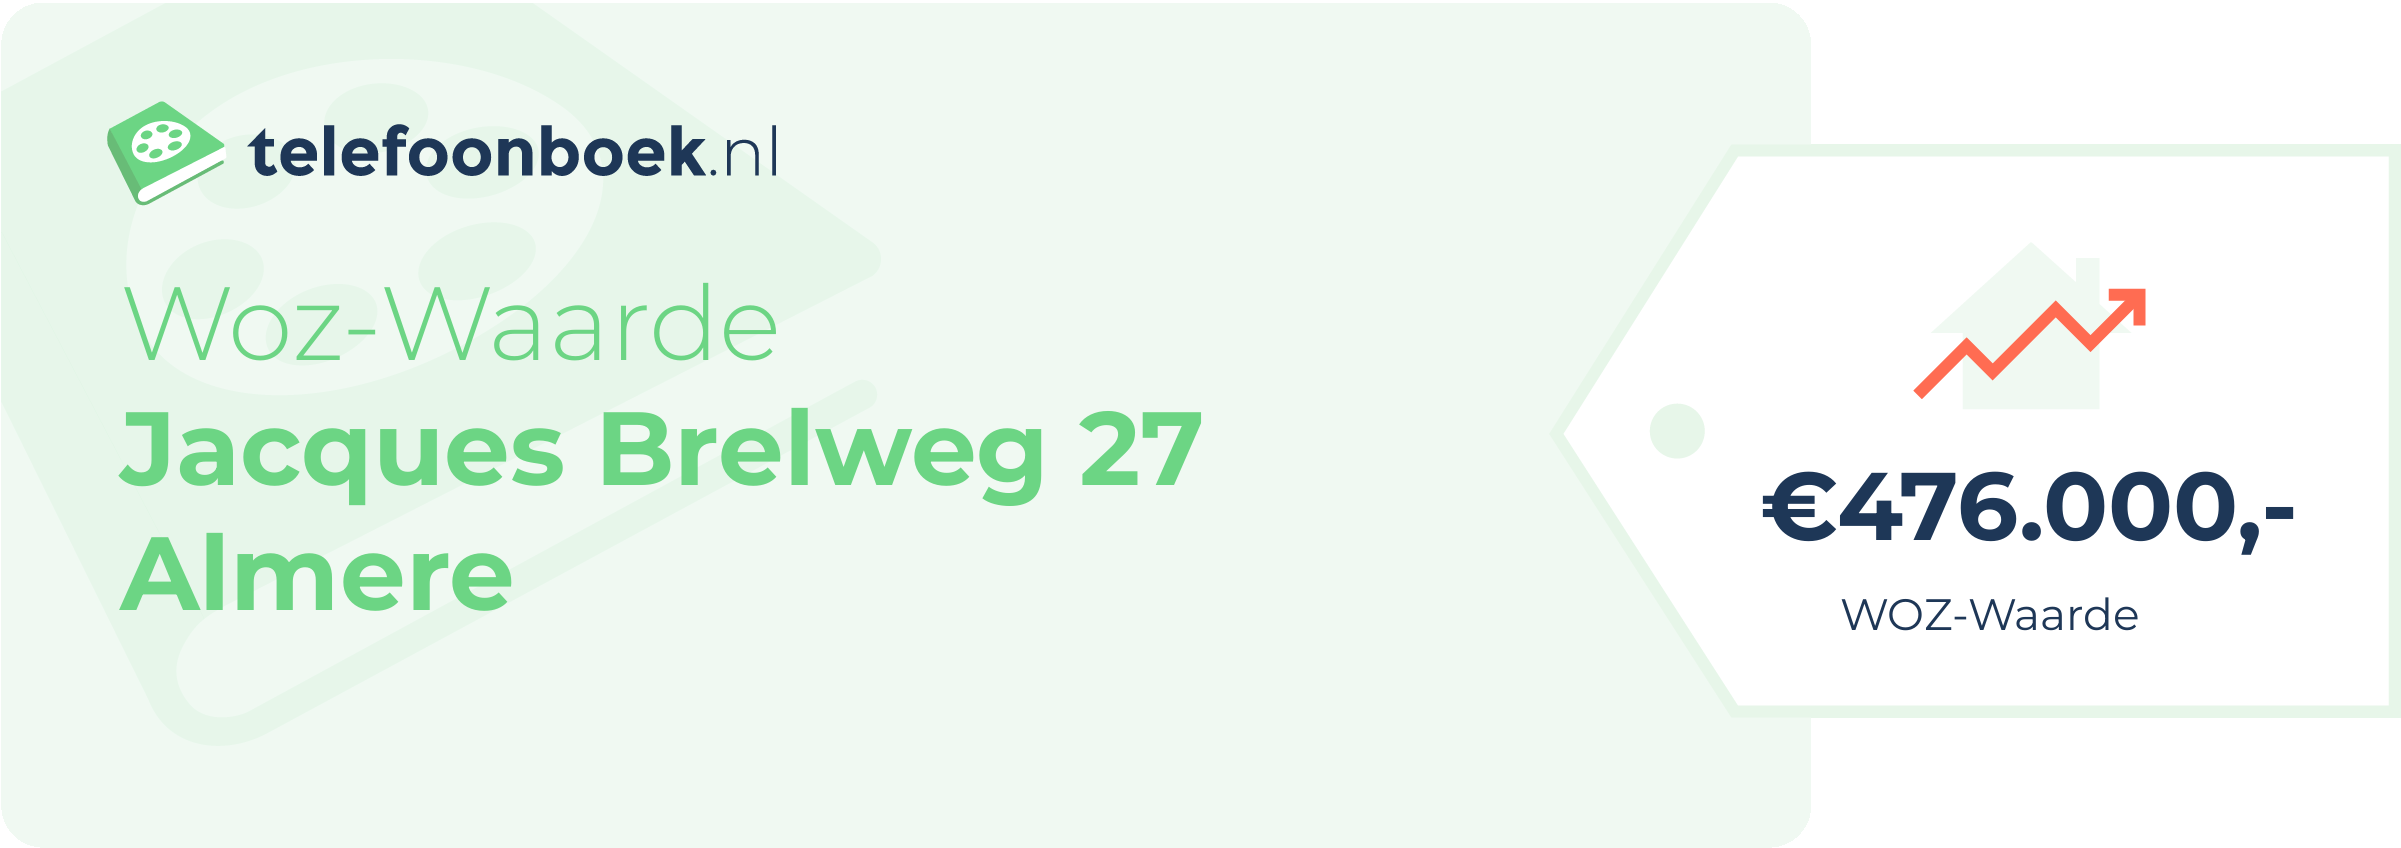 WOZ-waarde Jacques Brelweg 27 Almere